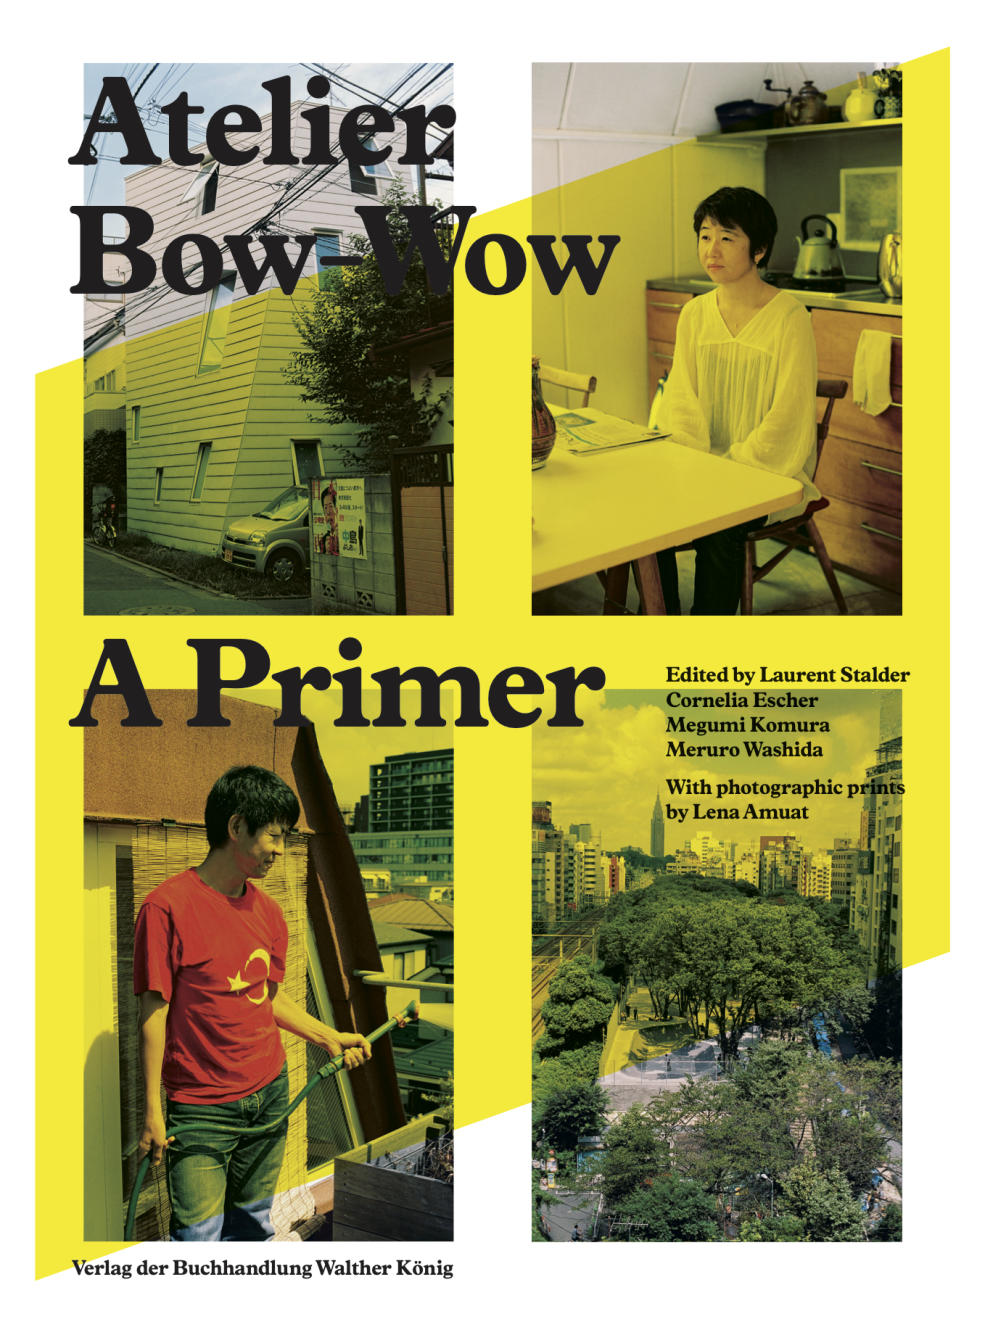 Vergrösserte Ansicht: Atelier Bow-Wow, A Primer, 2013